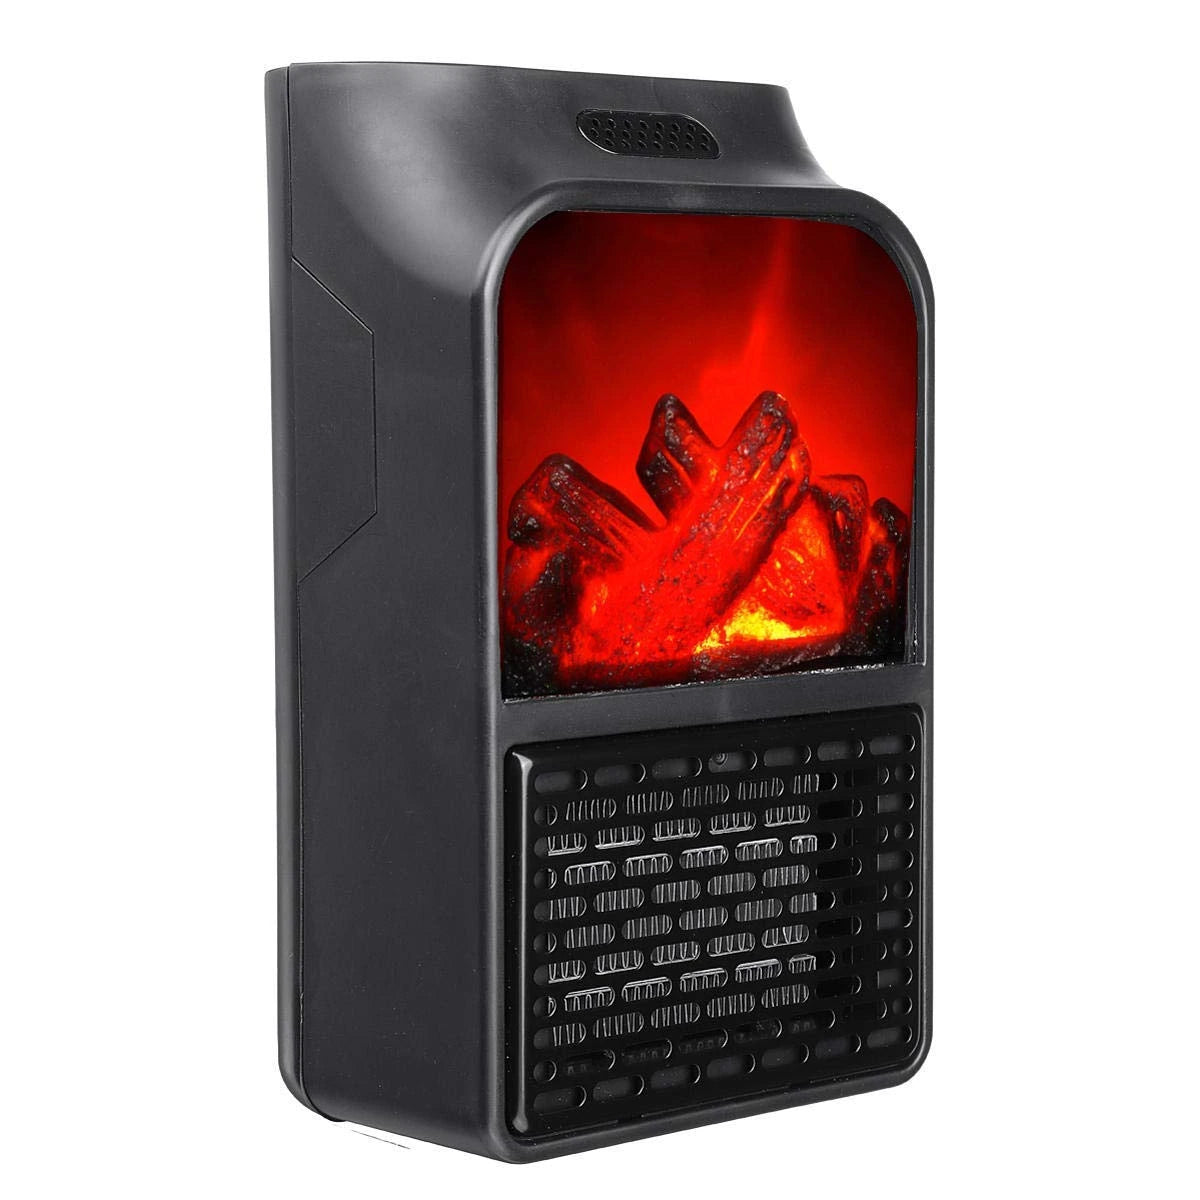 Aeroterma portabila Flame Heater 500 W, 2 niveluri temperatura, display digital,telecomanda